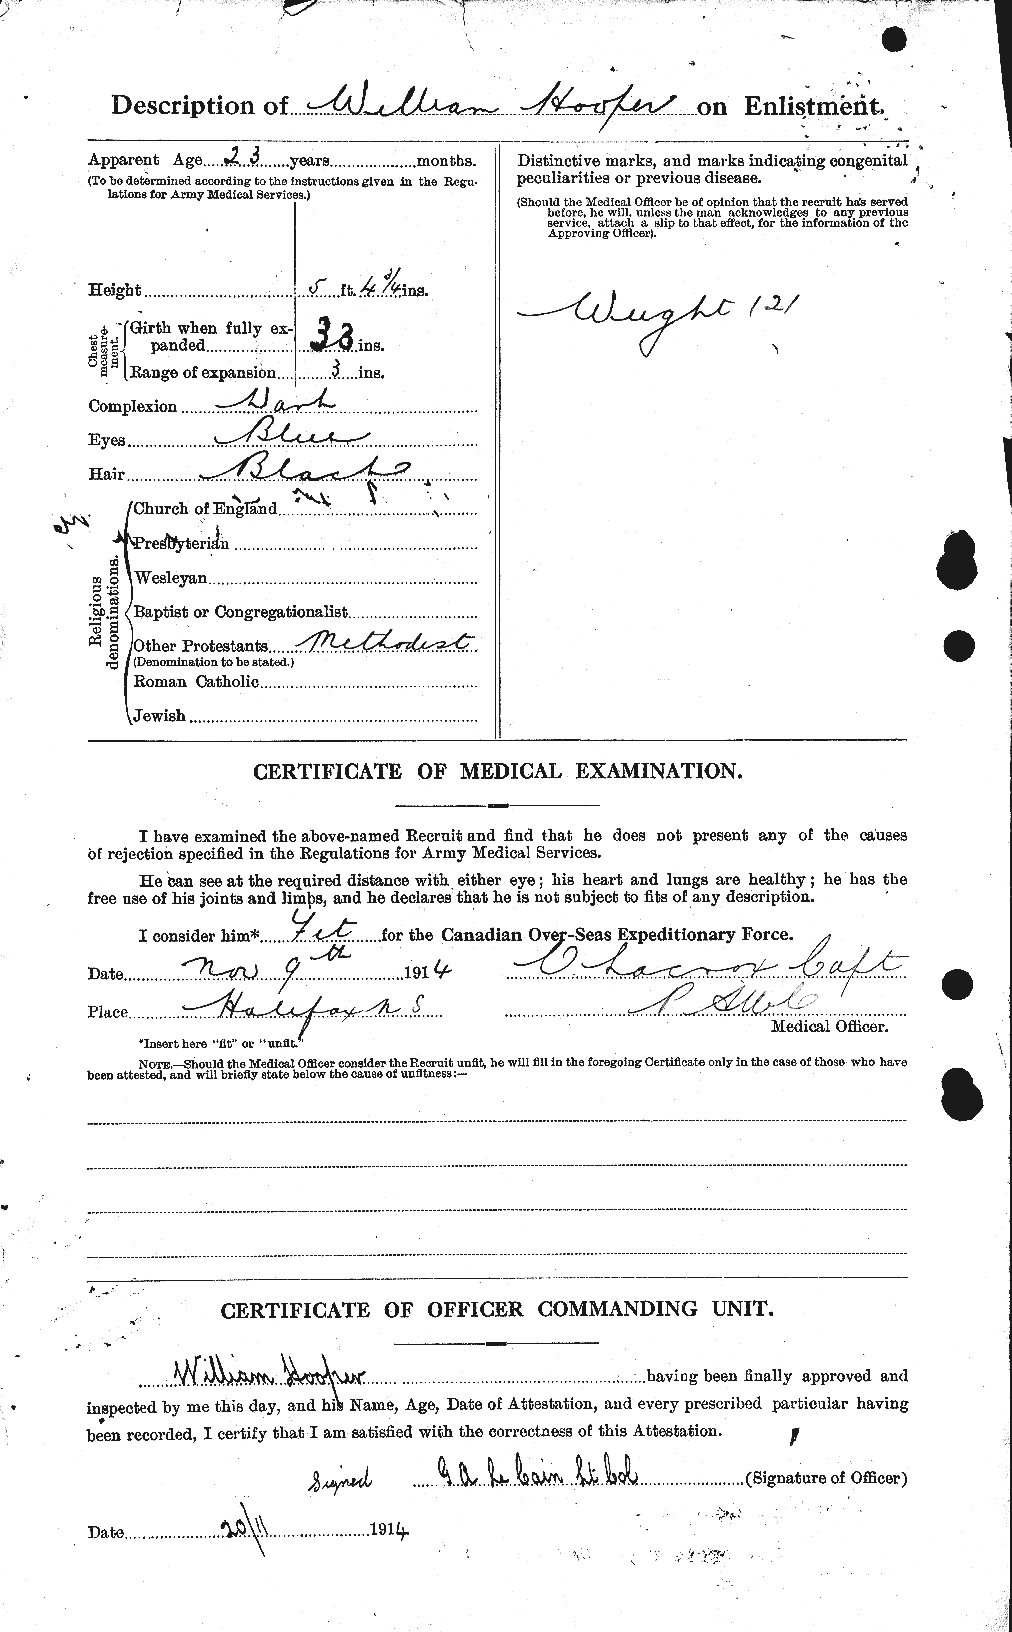 Dossiers du Personnel de la Première Guerre mondiale - CEC 399219b